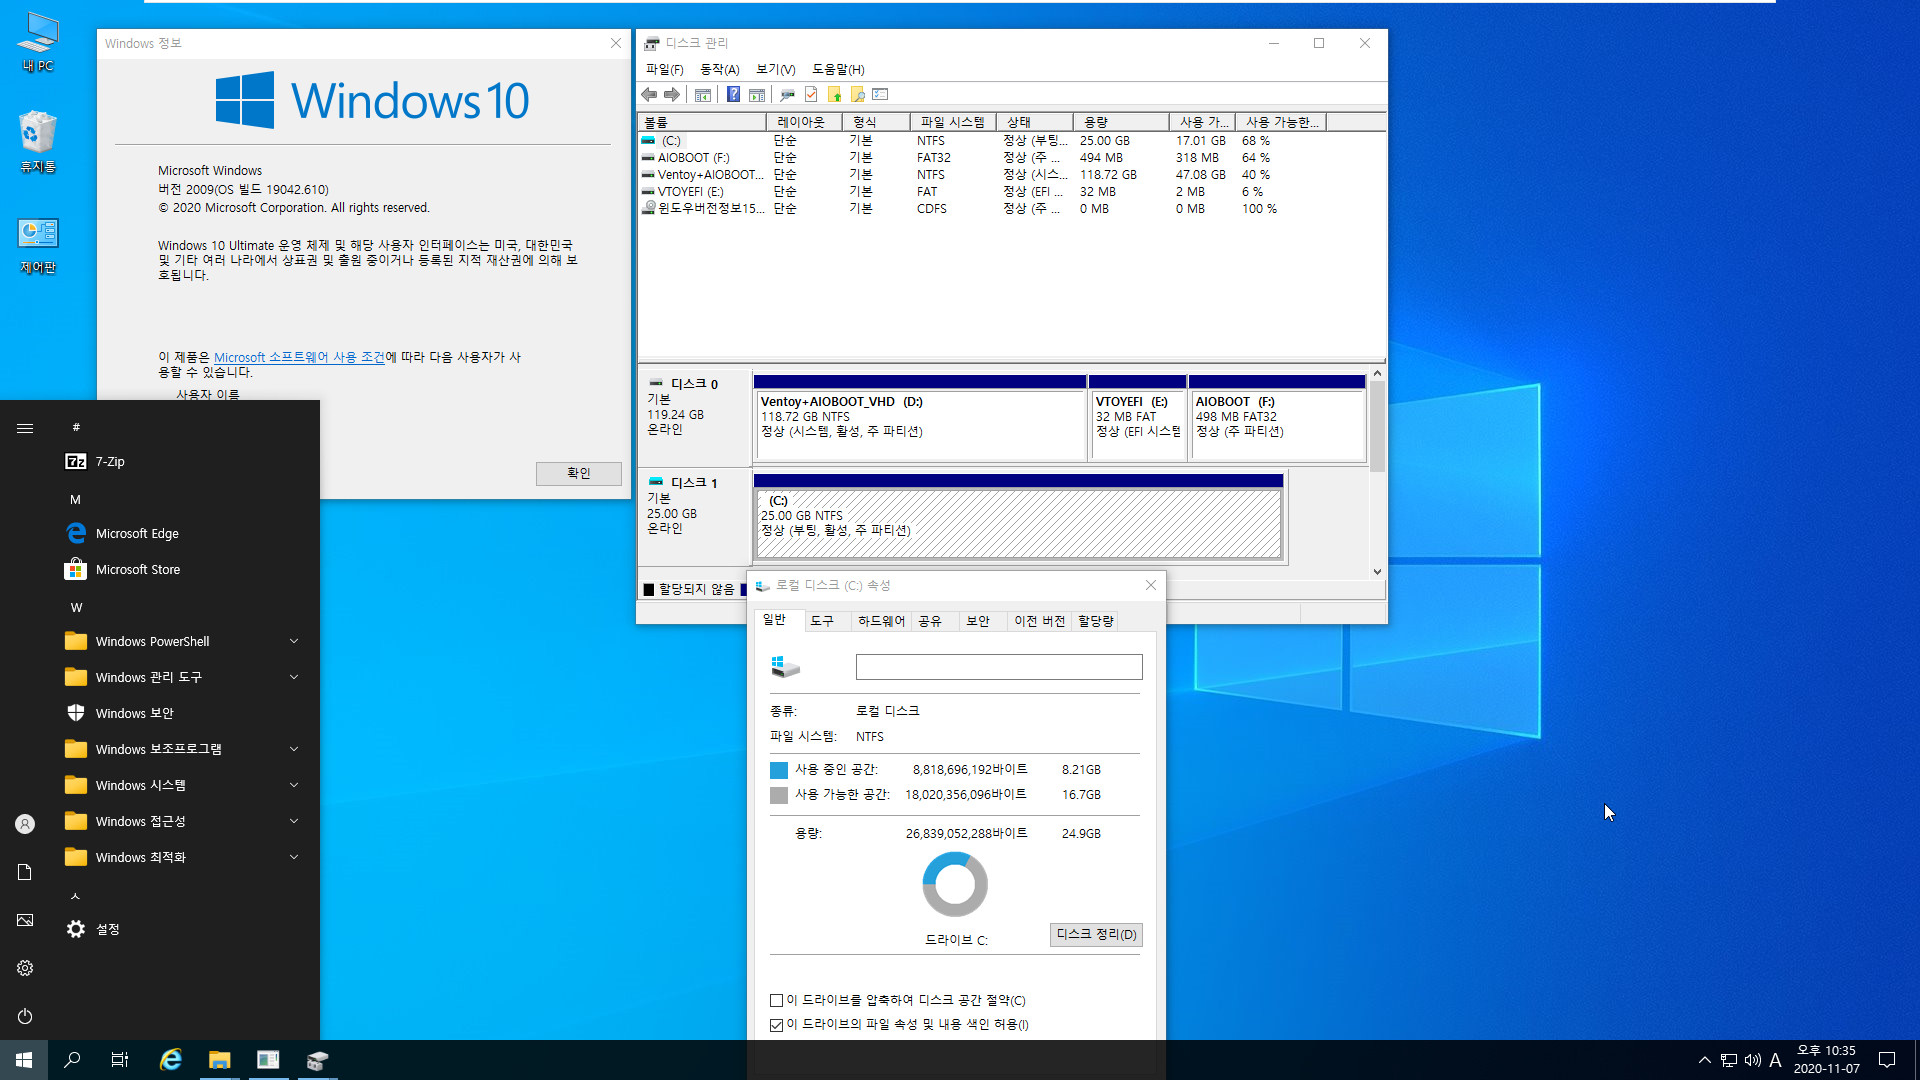 3.Kong_Windows10_v2009_19042.610_x64.vhd 에 Imagew64.exe 으로 복구하여 부팅 테스트 2020-11-07_223541.jpg